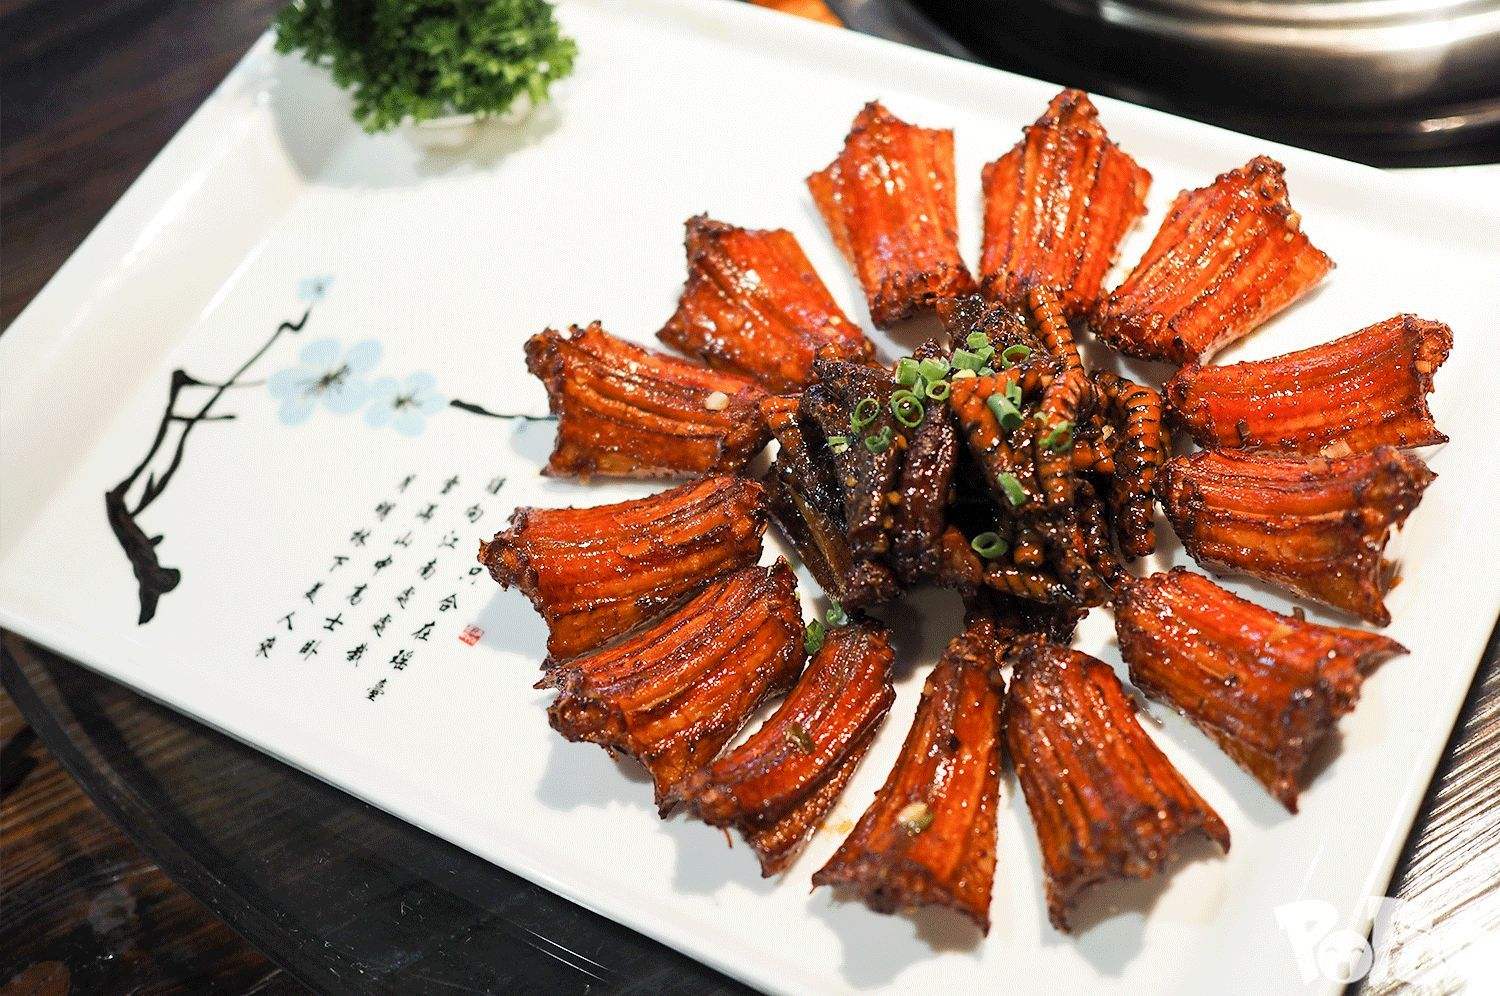 口味蛇是一道湖南省传统的名菜,营养价值非常高